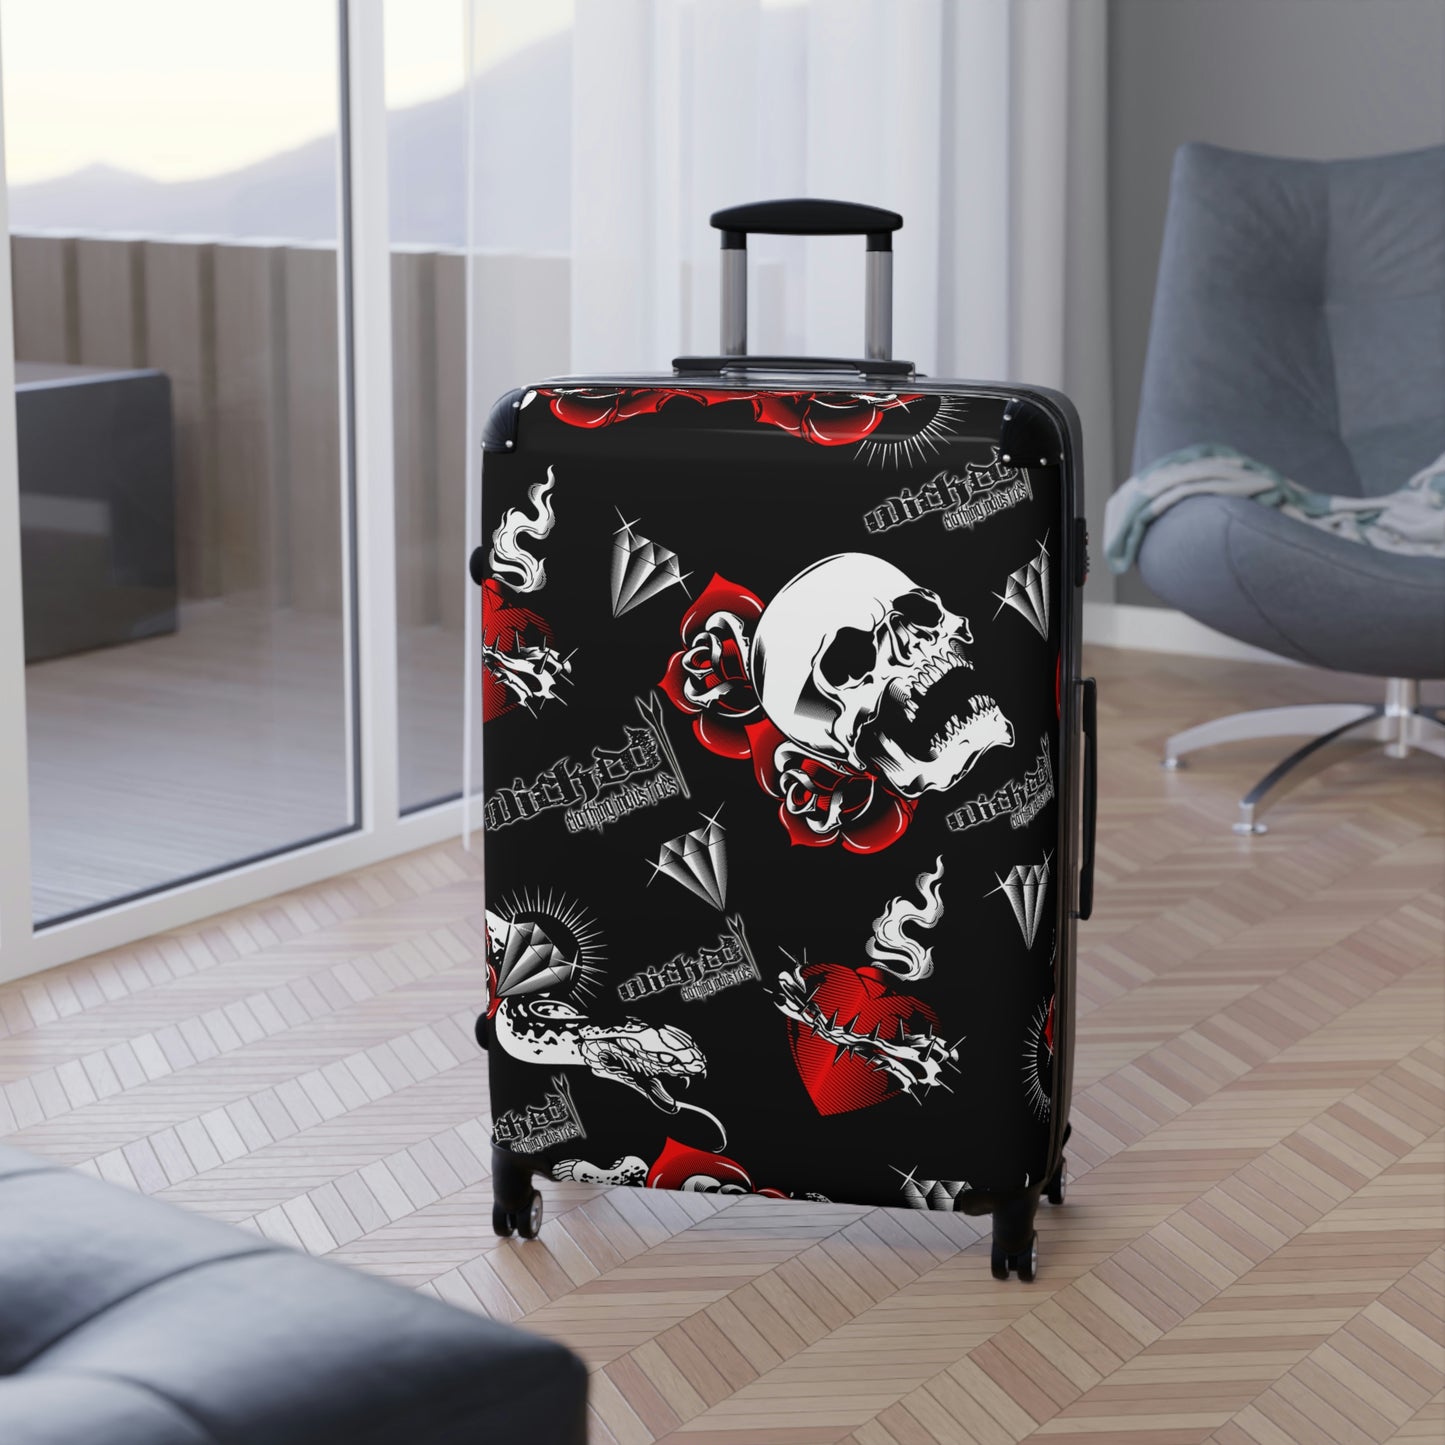 Sorrow Suitcase